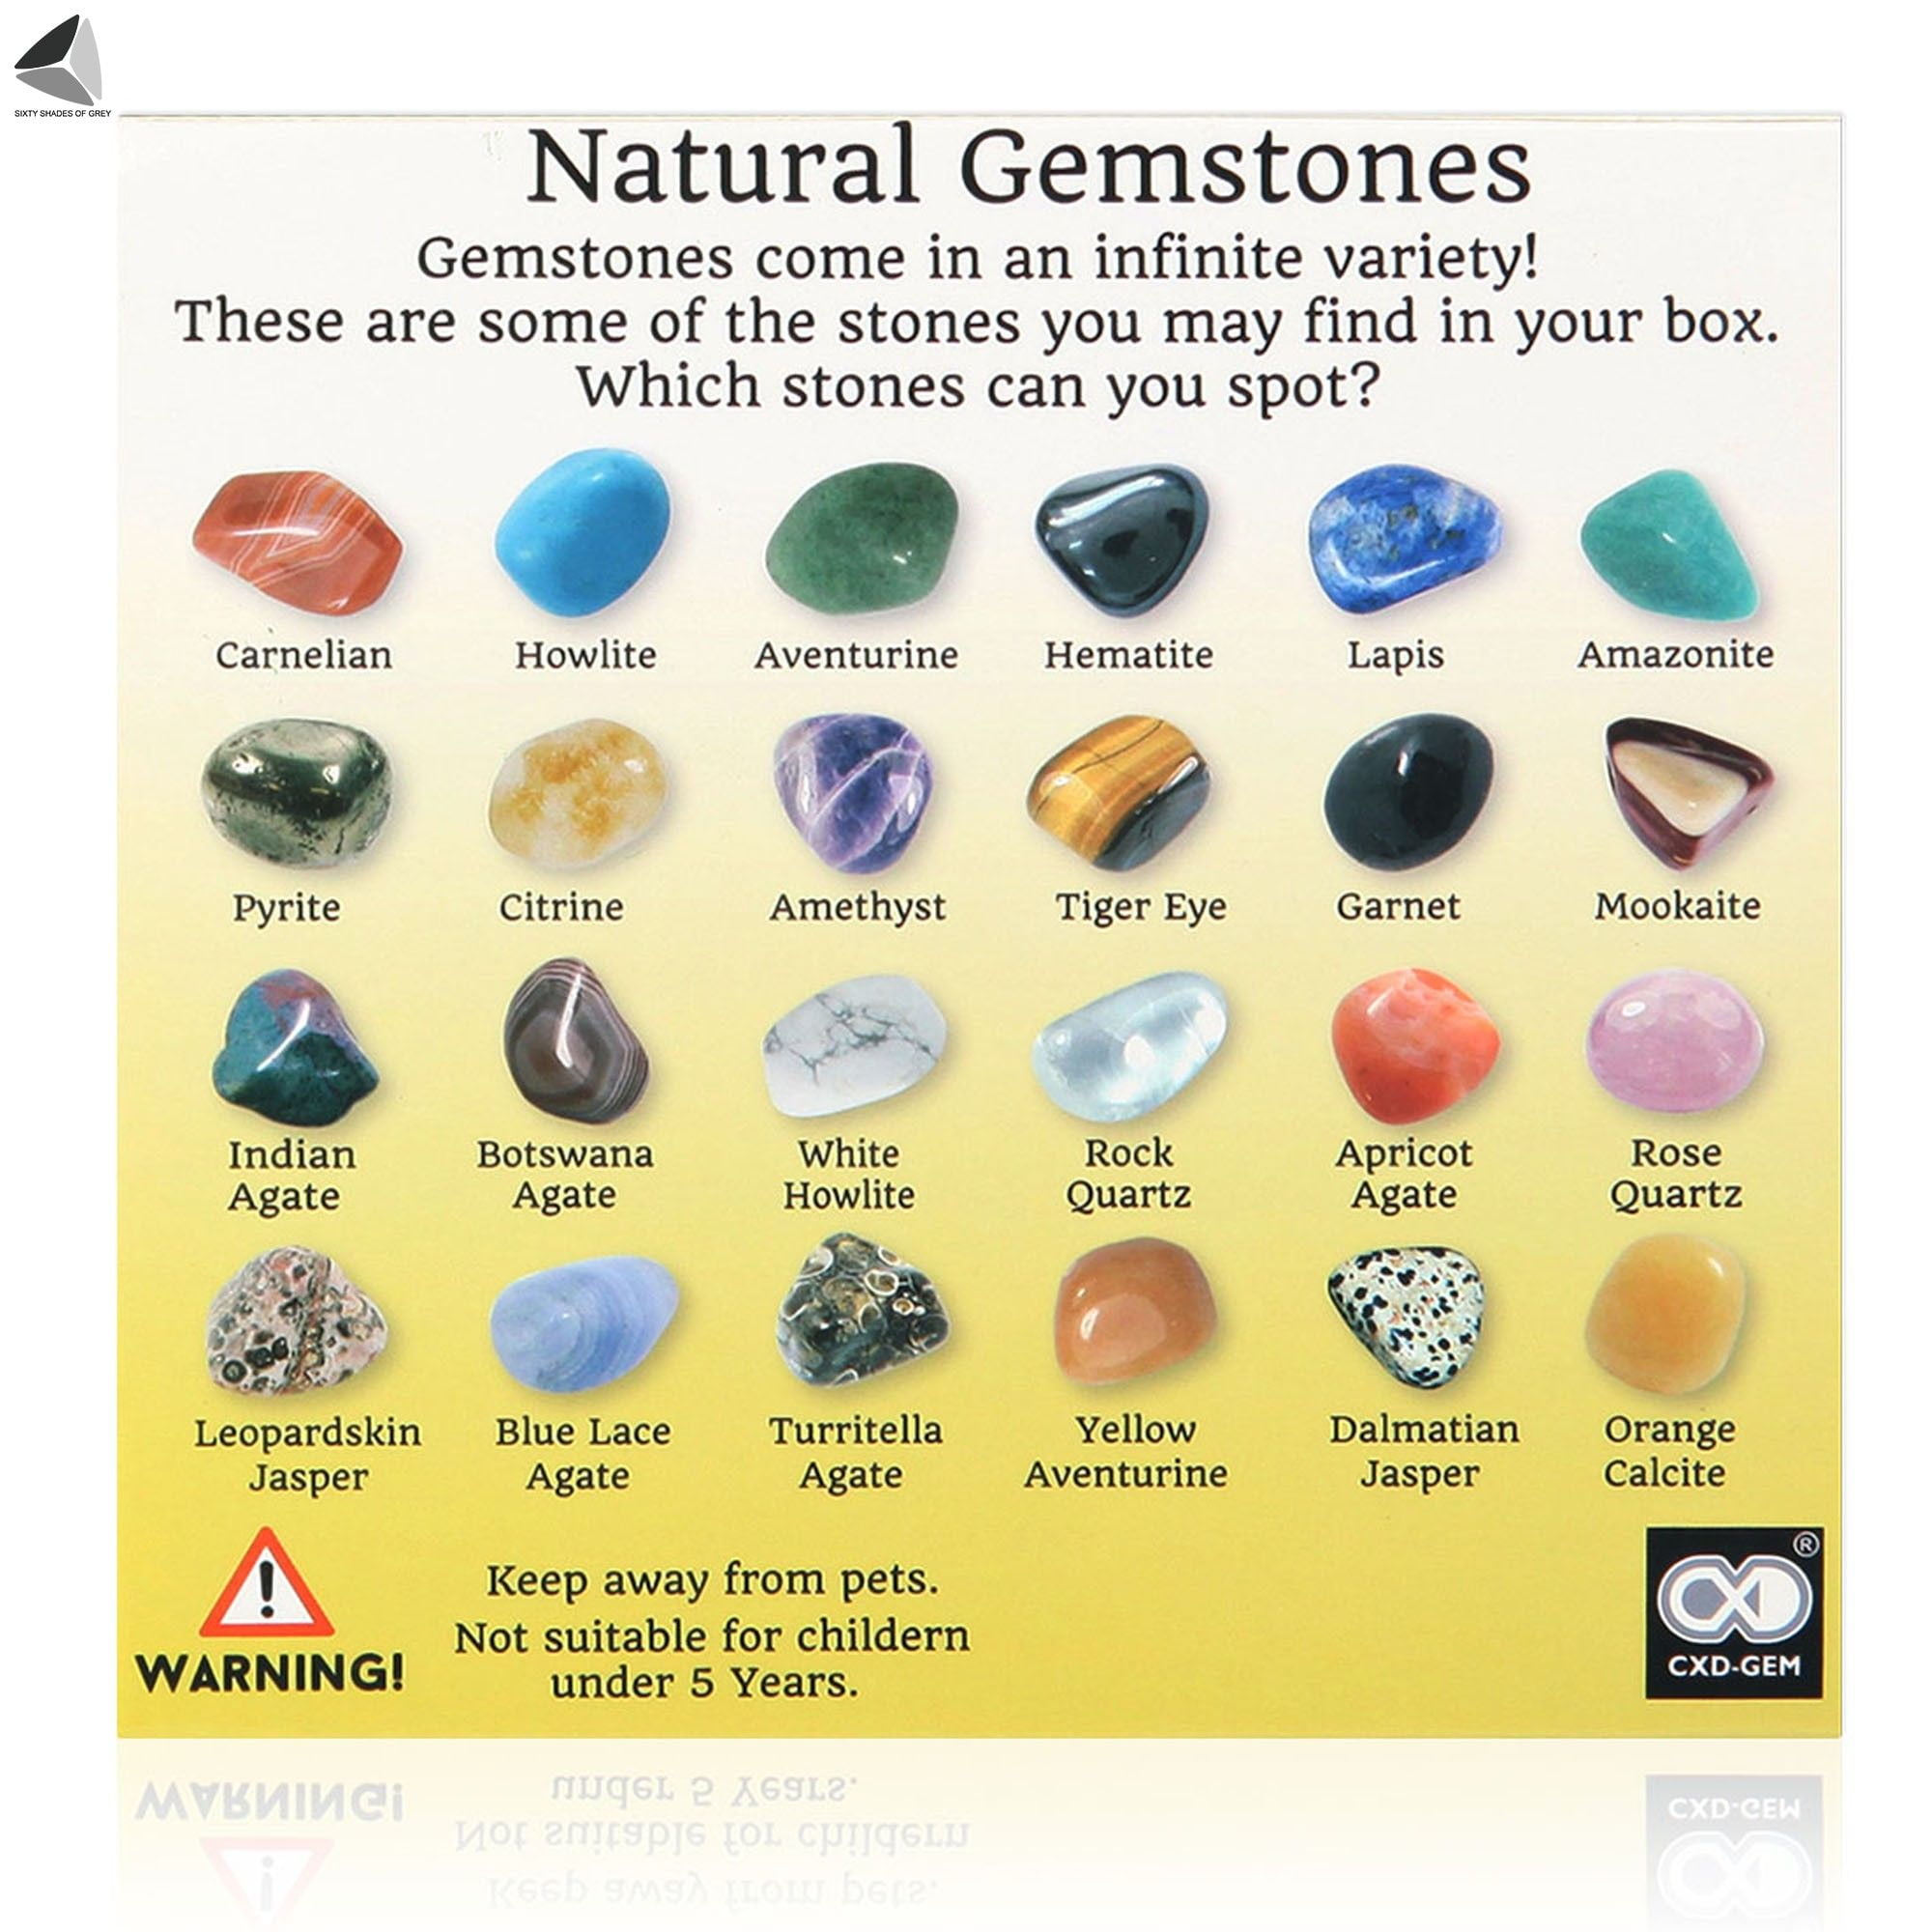 Natural Healing Gems